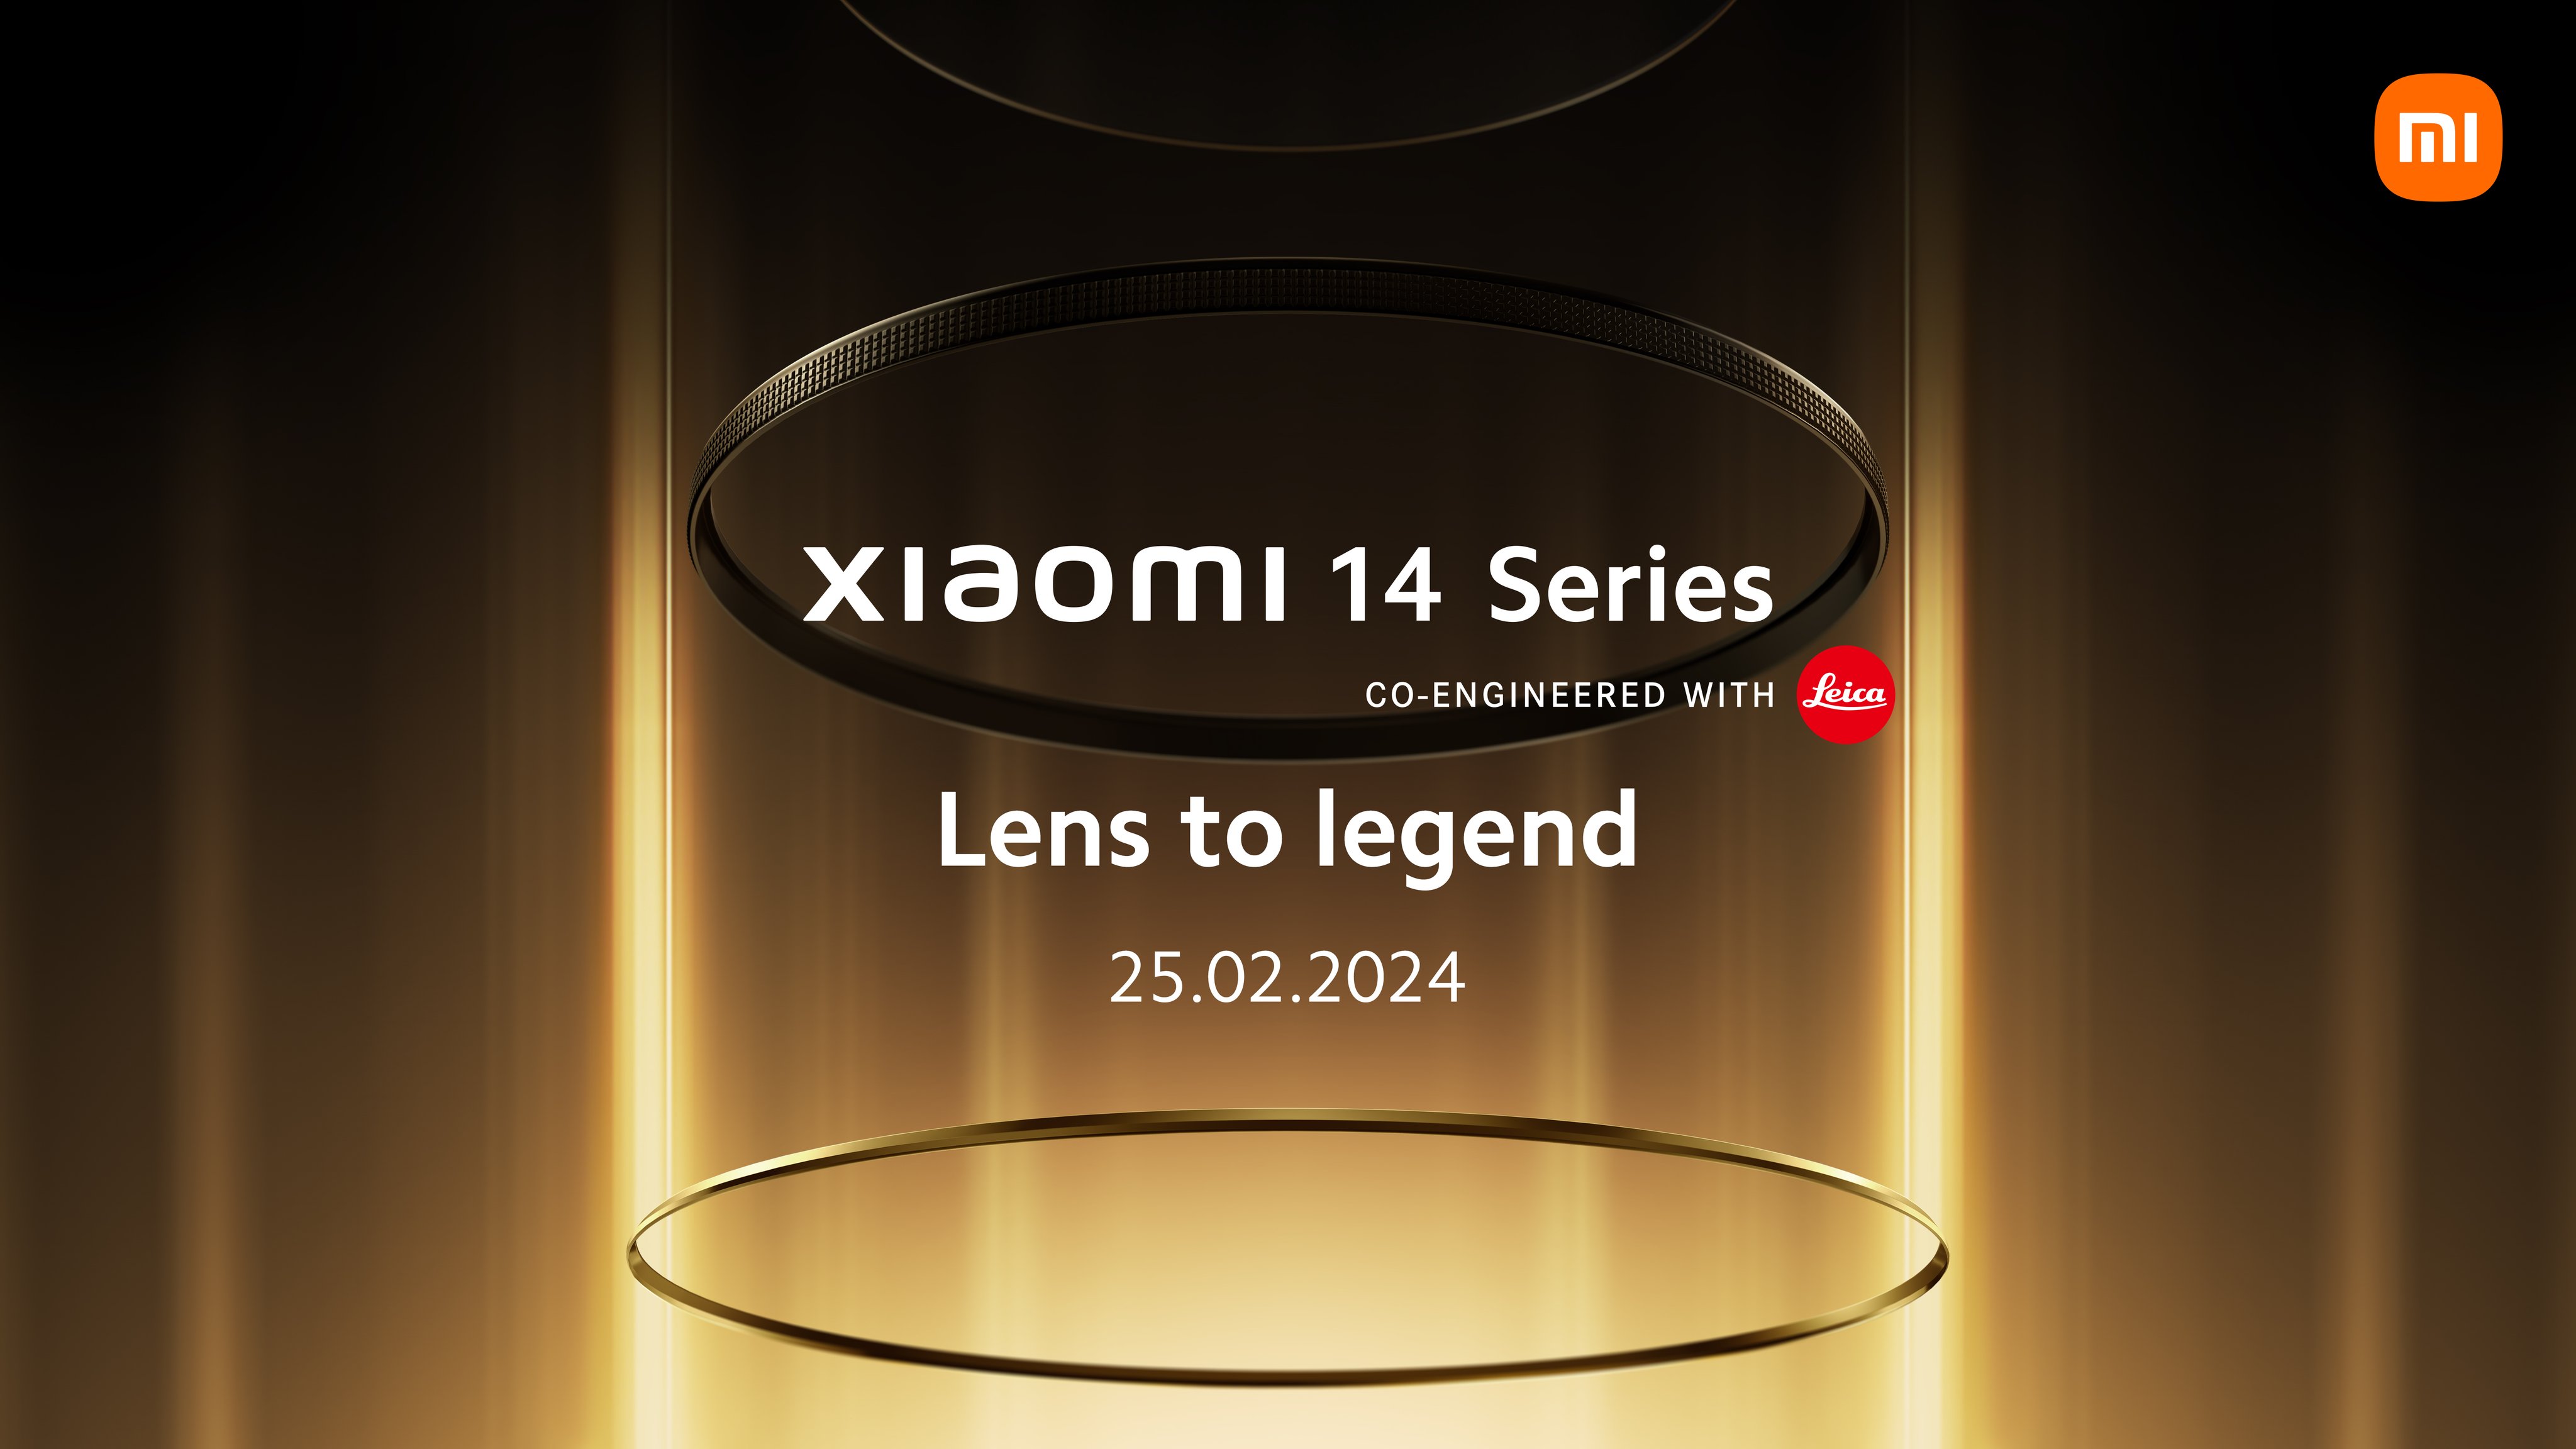 Det er officielt: Den globale lancering af Xiaomis 14 flagskibe finder sted den 25. februar.